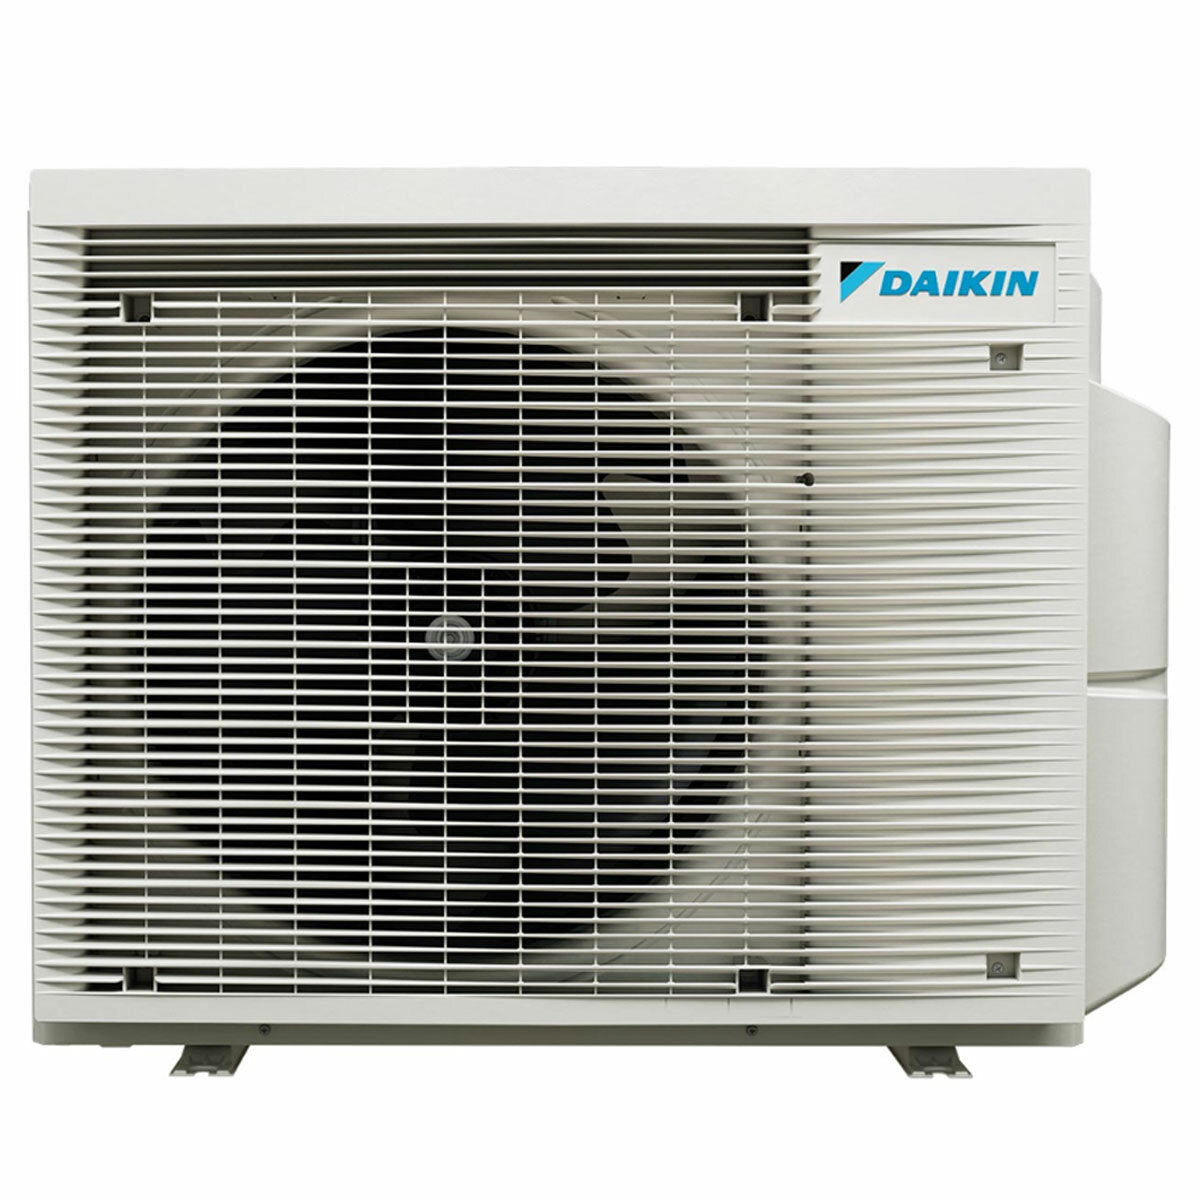 Daikin Stylish White Quadri-Split-Klimaanlage 12000+12000+12000+12000 BTU Inverter A++ WLAN-Außeneinheit 7,4 kW